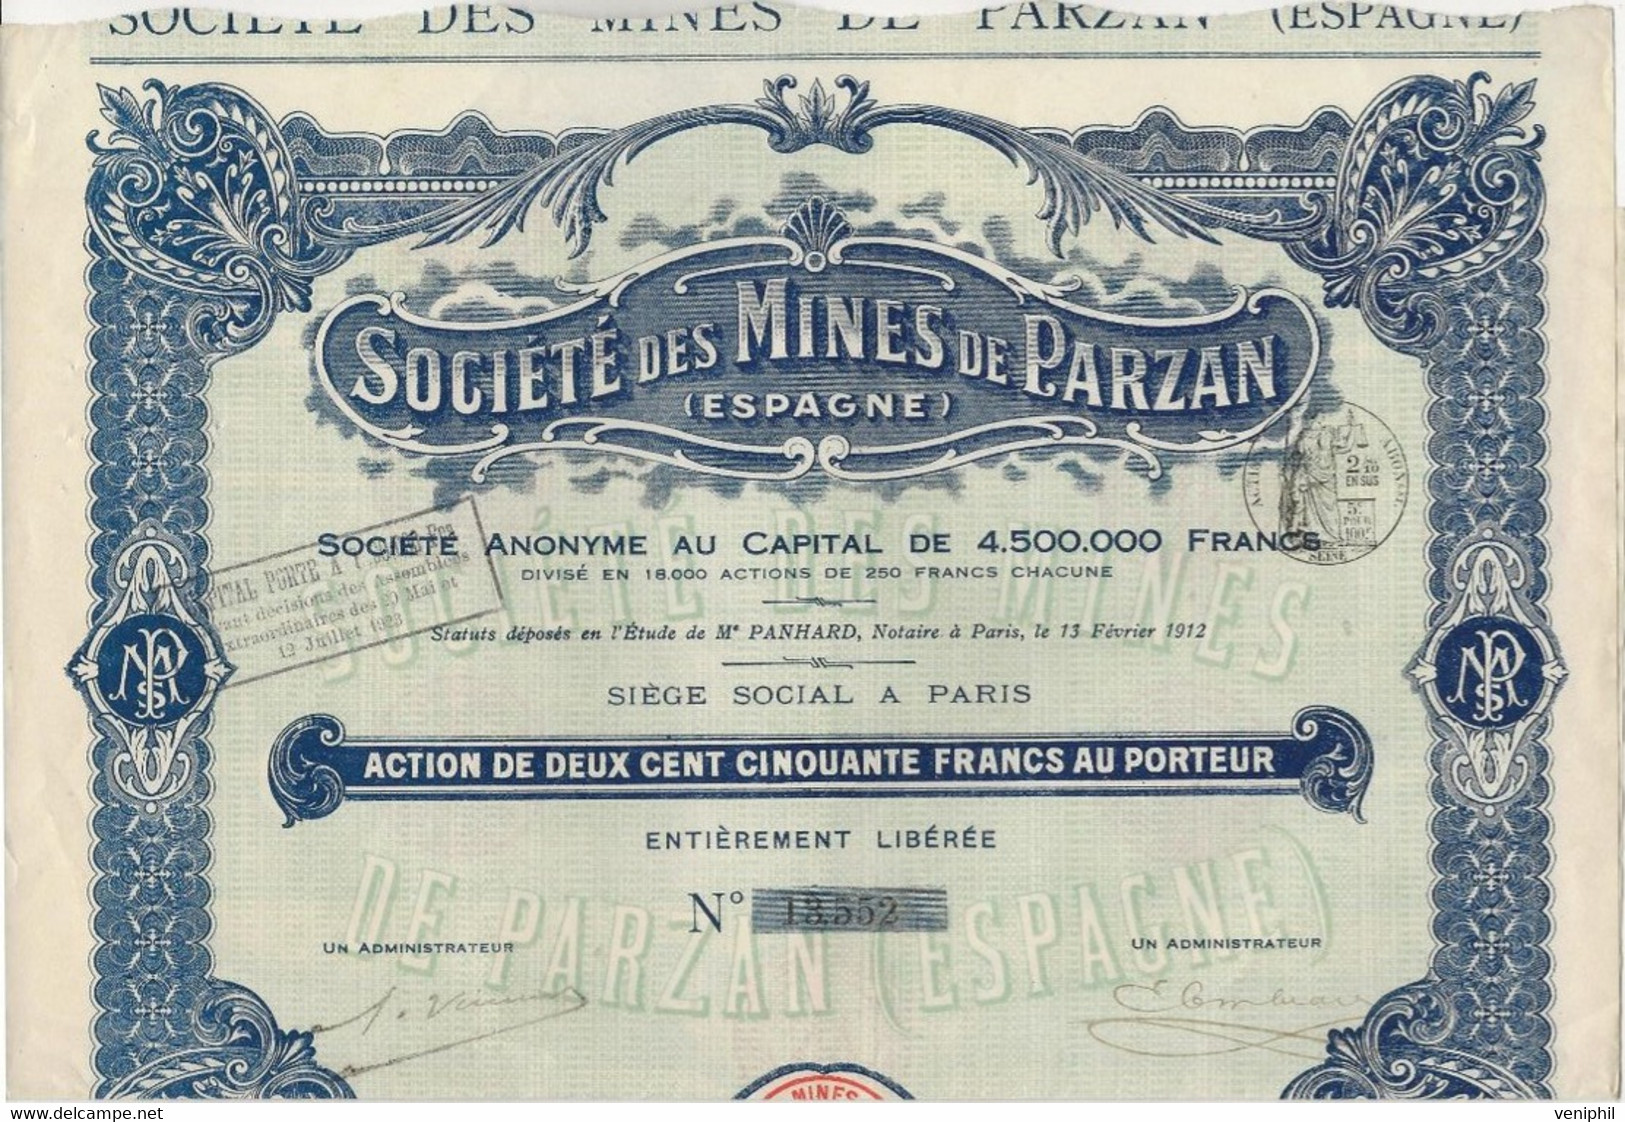 SOCIETE DE MINES DE PARZAN - ESPAGNE - ACTION DE 250 FRANCS  -1912 - Mineral